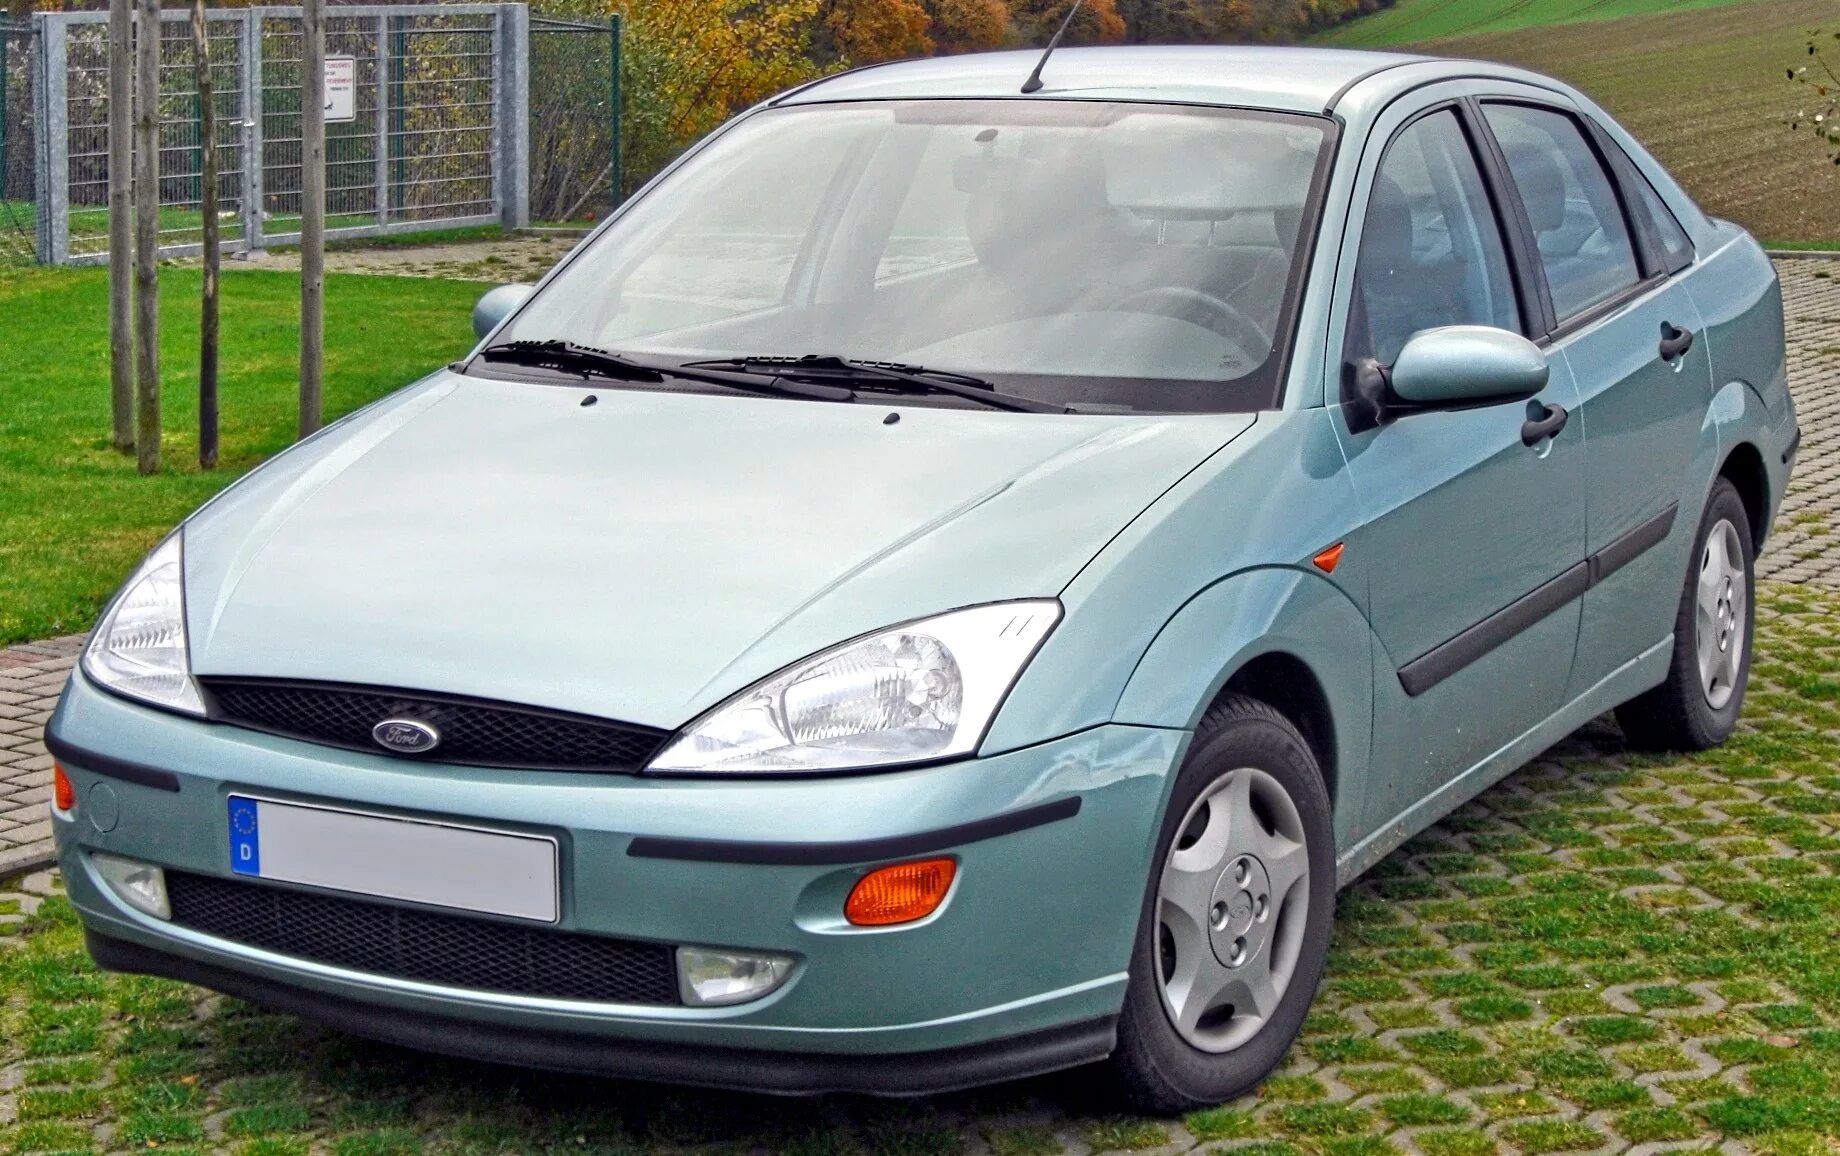 Ford Focus 1999. Форд фокус 1999 года. Форд фокус 1. Форд фокус 1999г. Снимаю легковой автомобиль